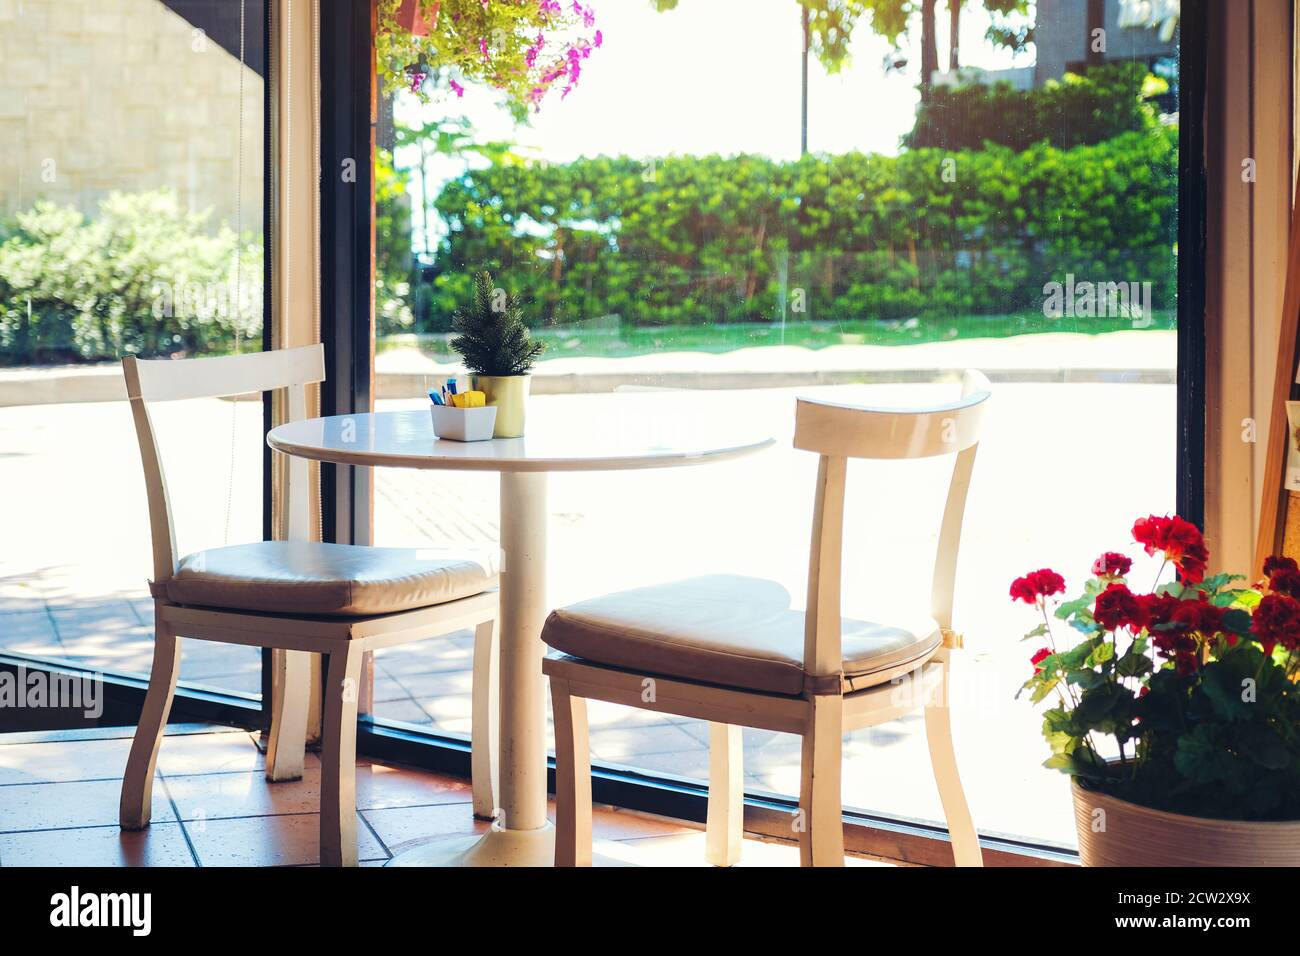 Ein Tisch in einem Café mit Blumentopf. Zwei leere Stühle warten auf  Kunden, innen mit landschaftlich schönem Blick auf das Meer aus dem  Glasfenster Stockfotografie - Alamy